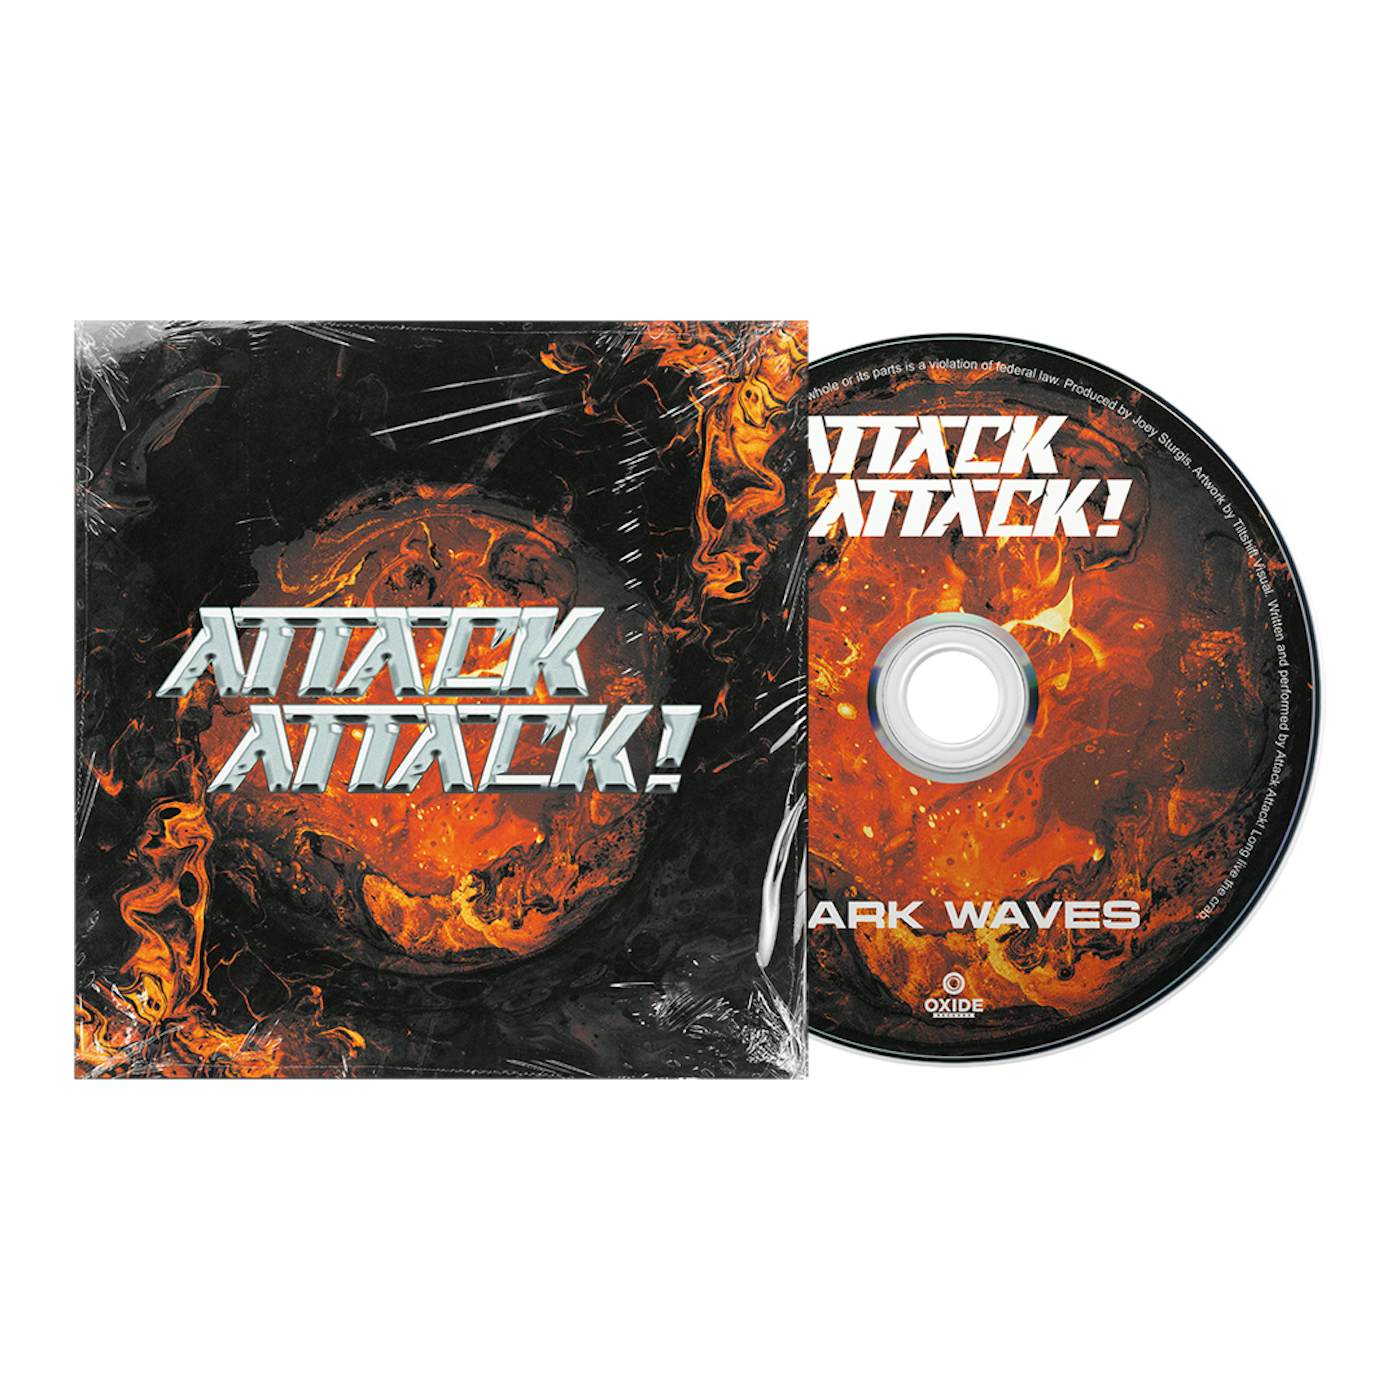 Attack Attack! Dark Waves CD